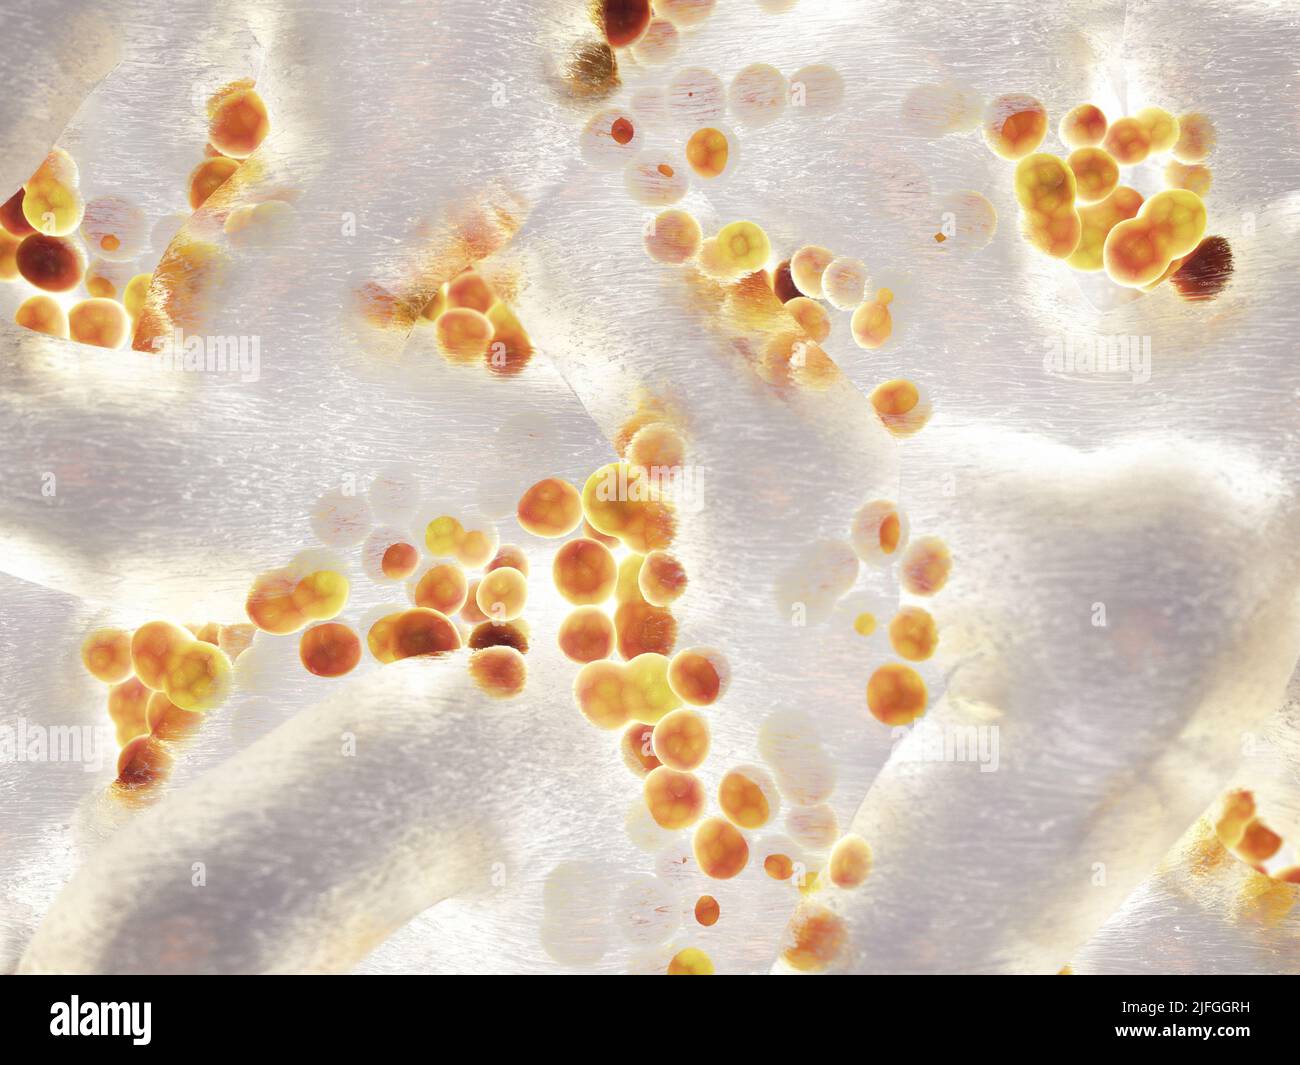 Colonia de bacterias Staphylococcus aureus. Los estafilococos son la causa más común de infecciones asociadas con biopelículas. Concepto de infecciones nosocomiales Foto de stock